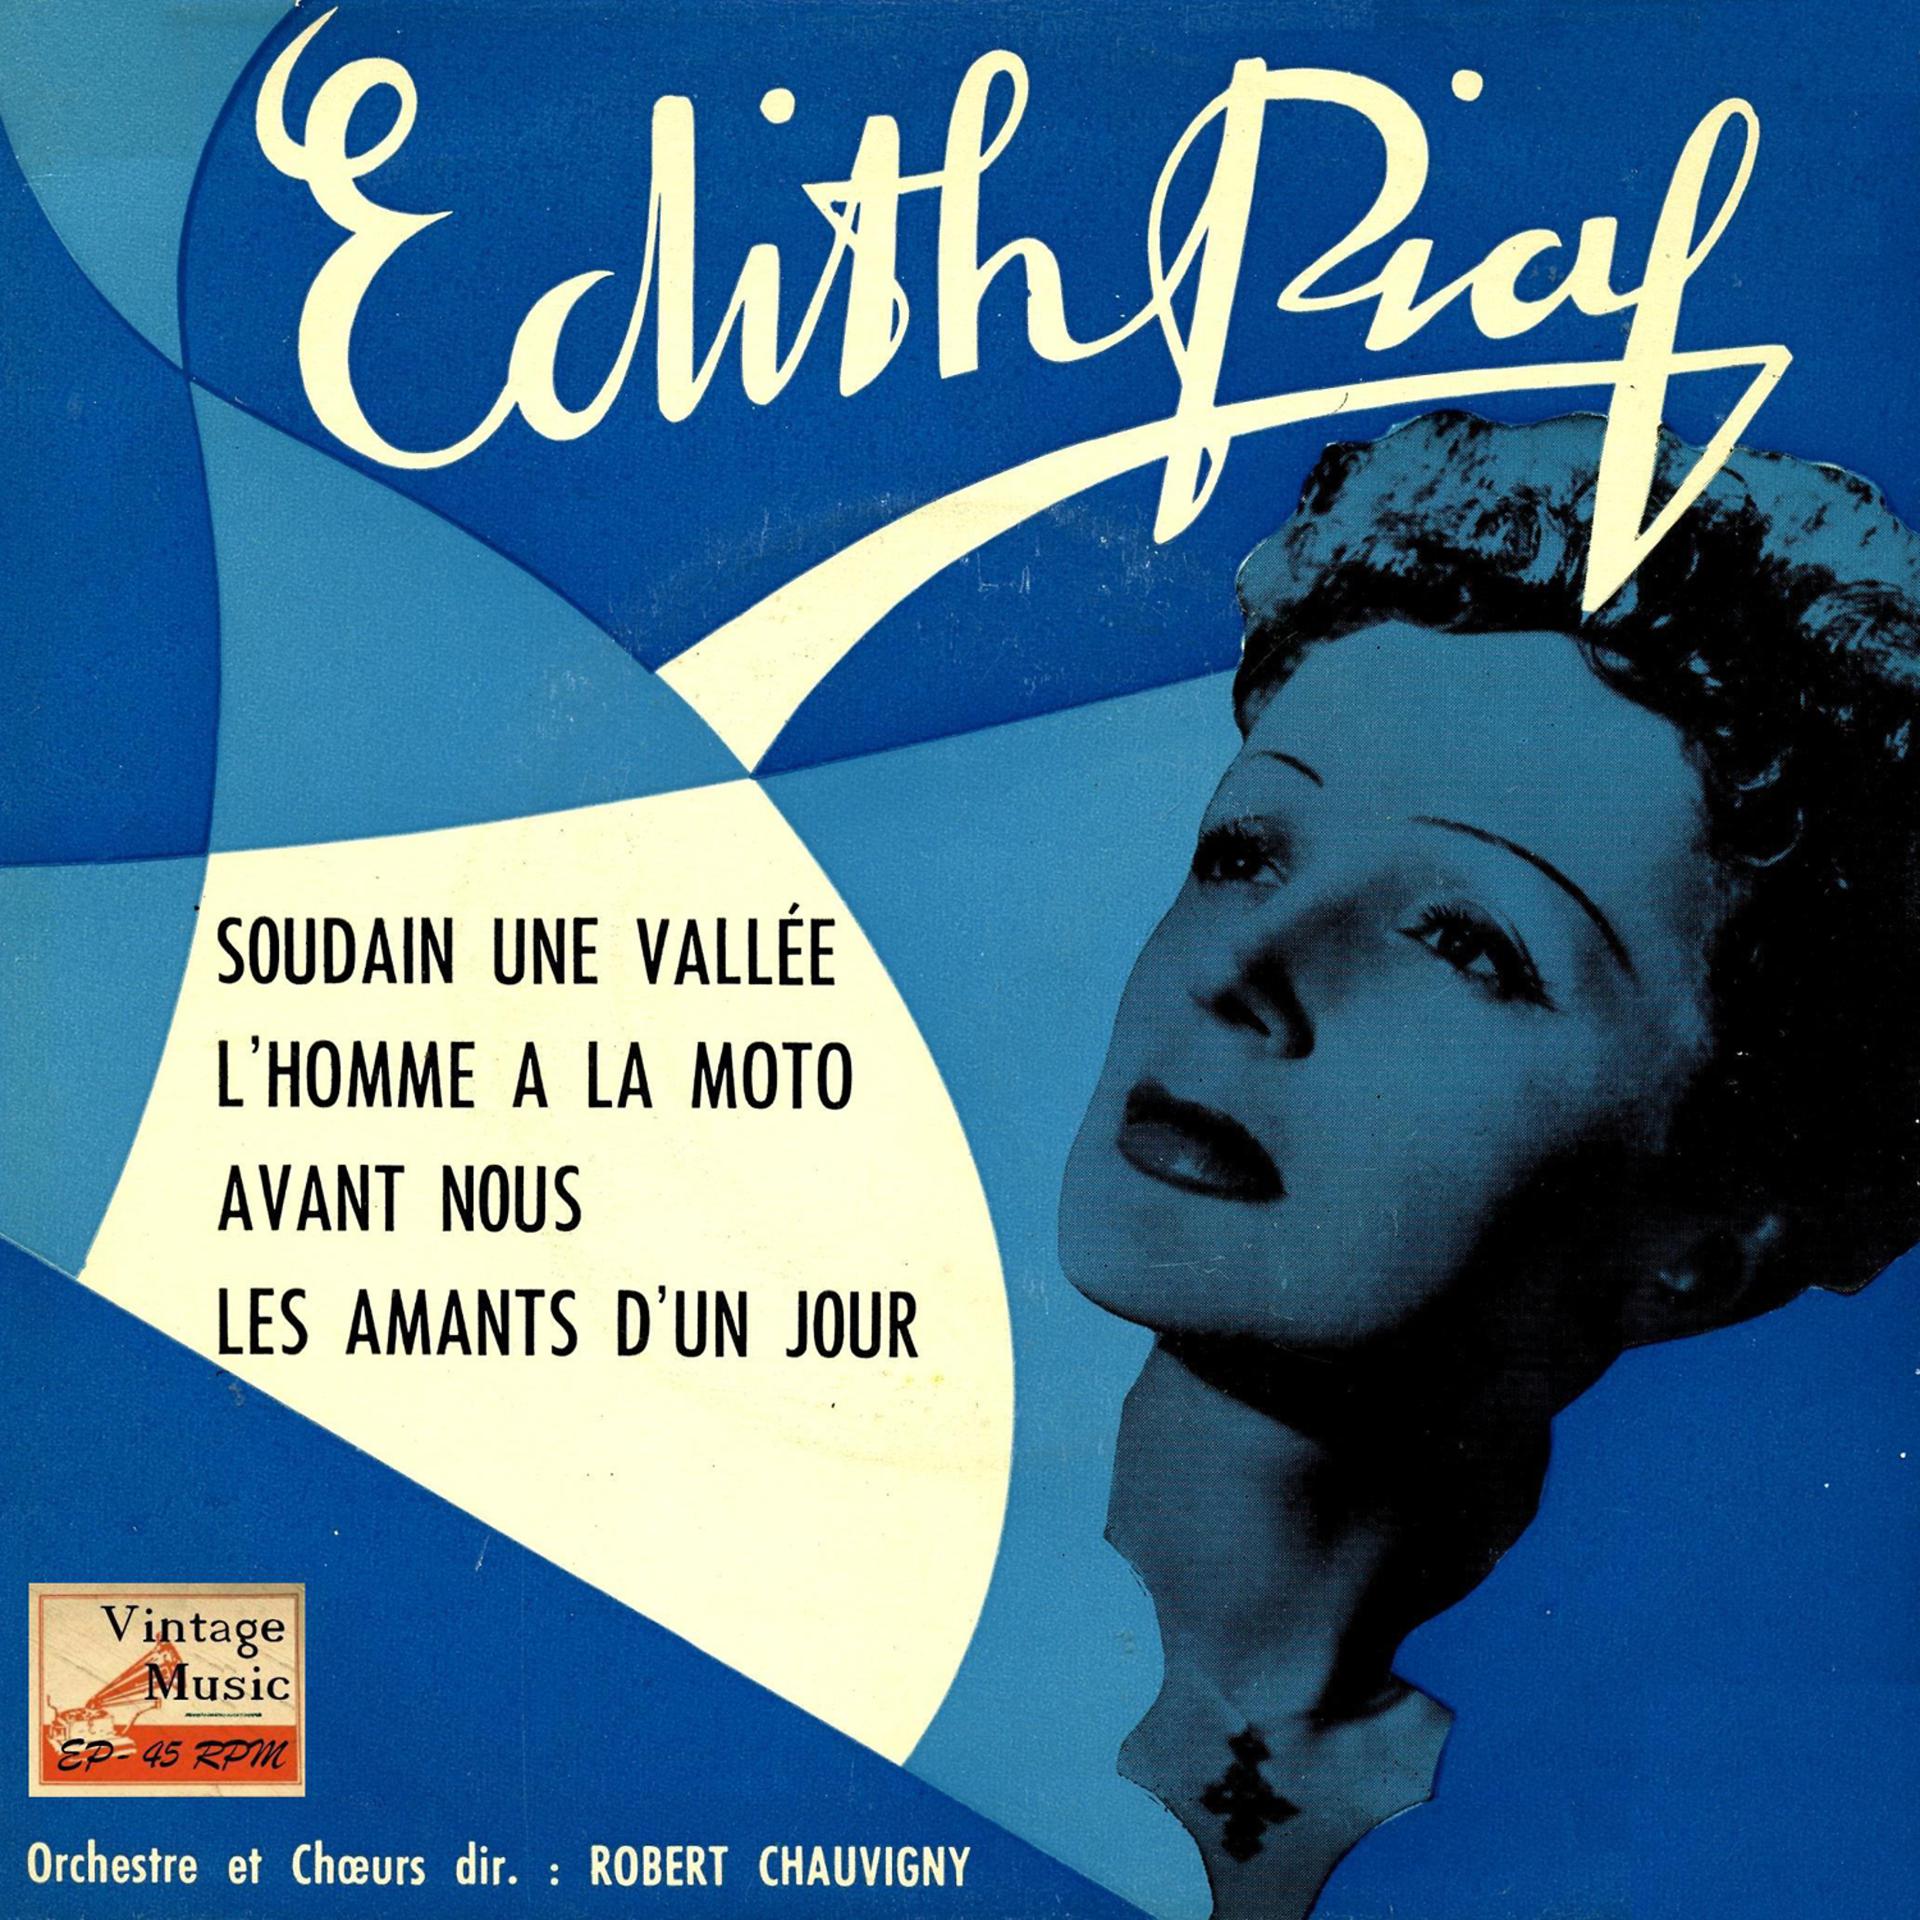 L'homme à la Moto Edith Piaf. Французская песня жене